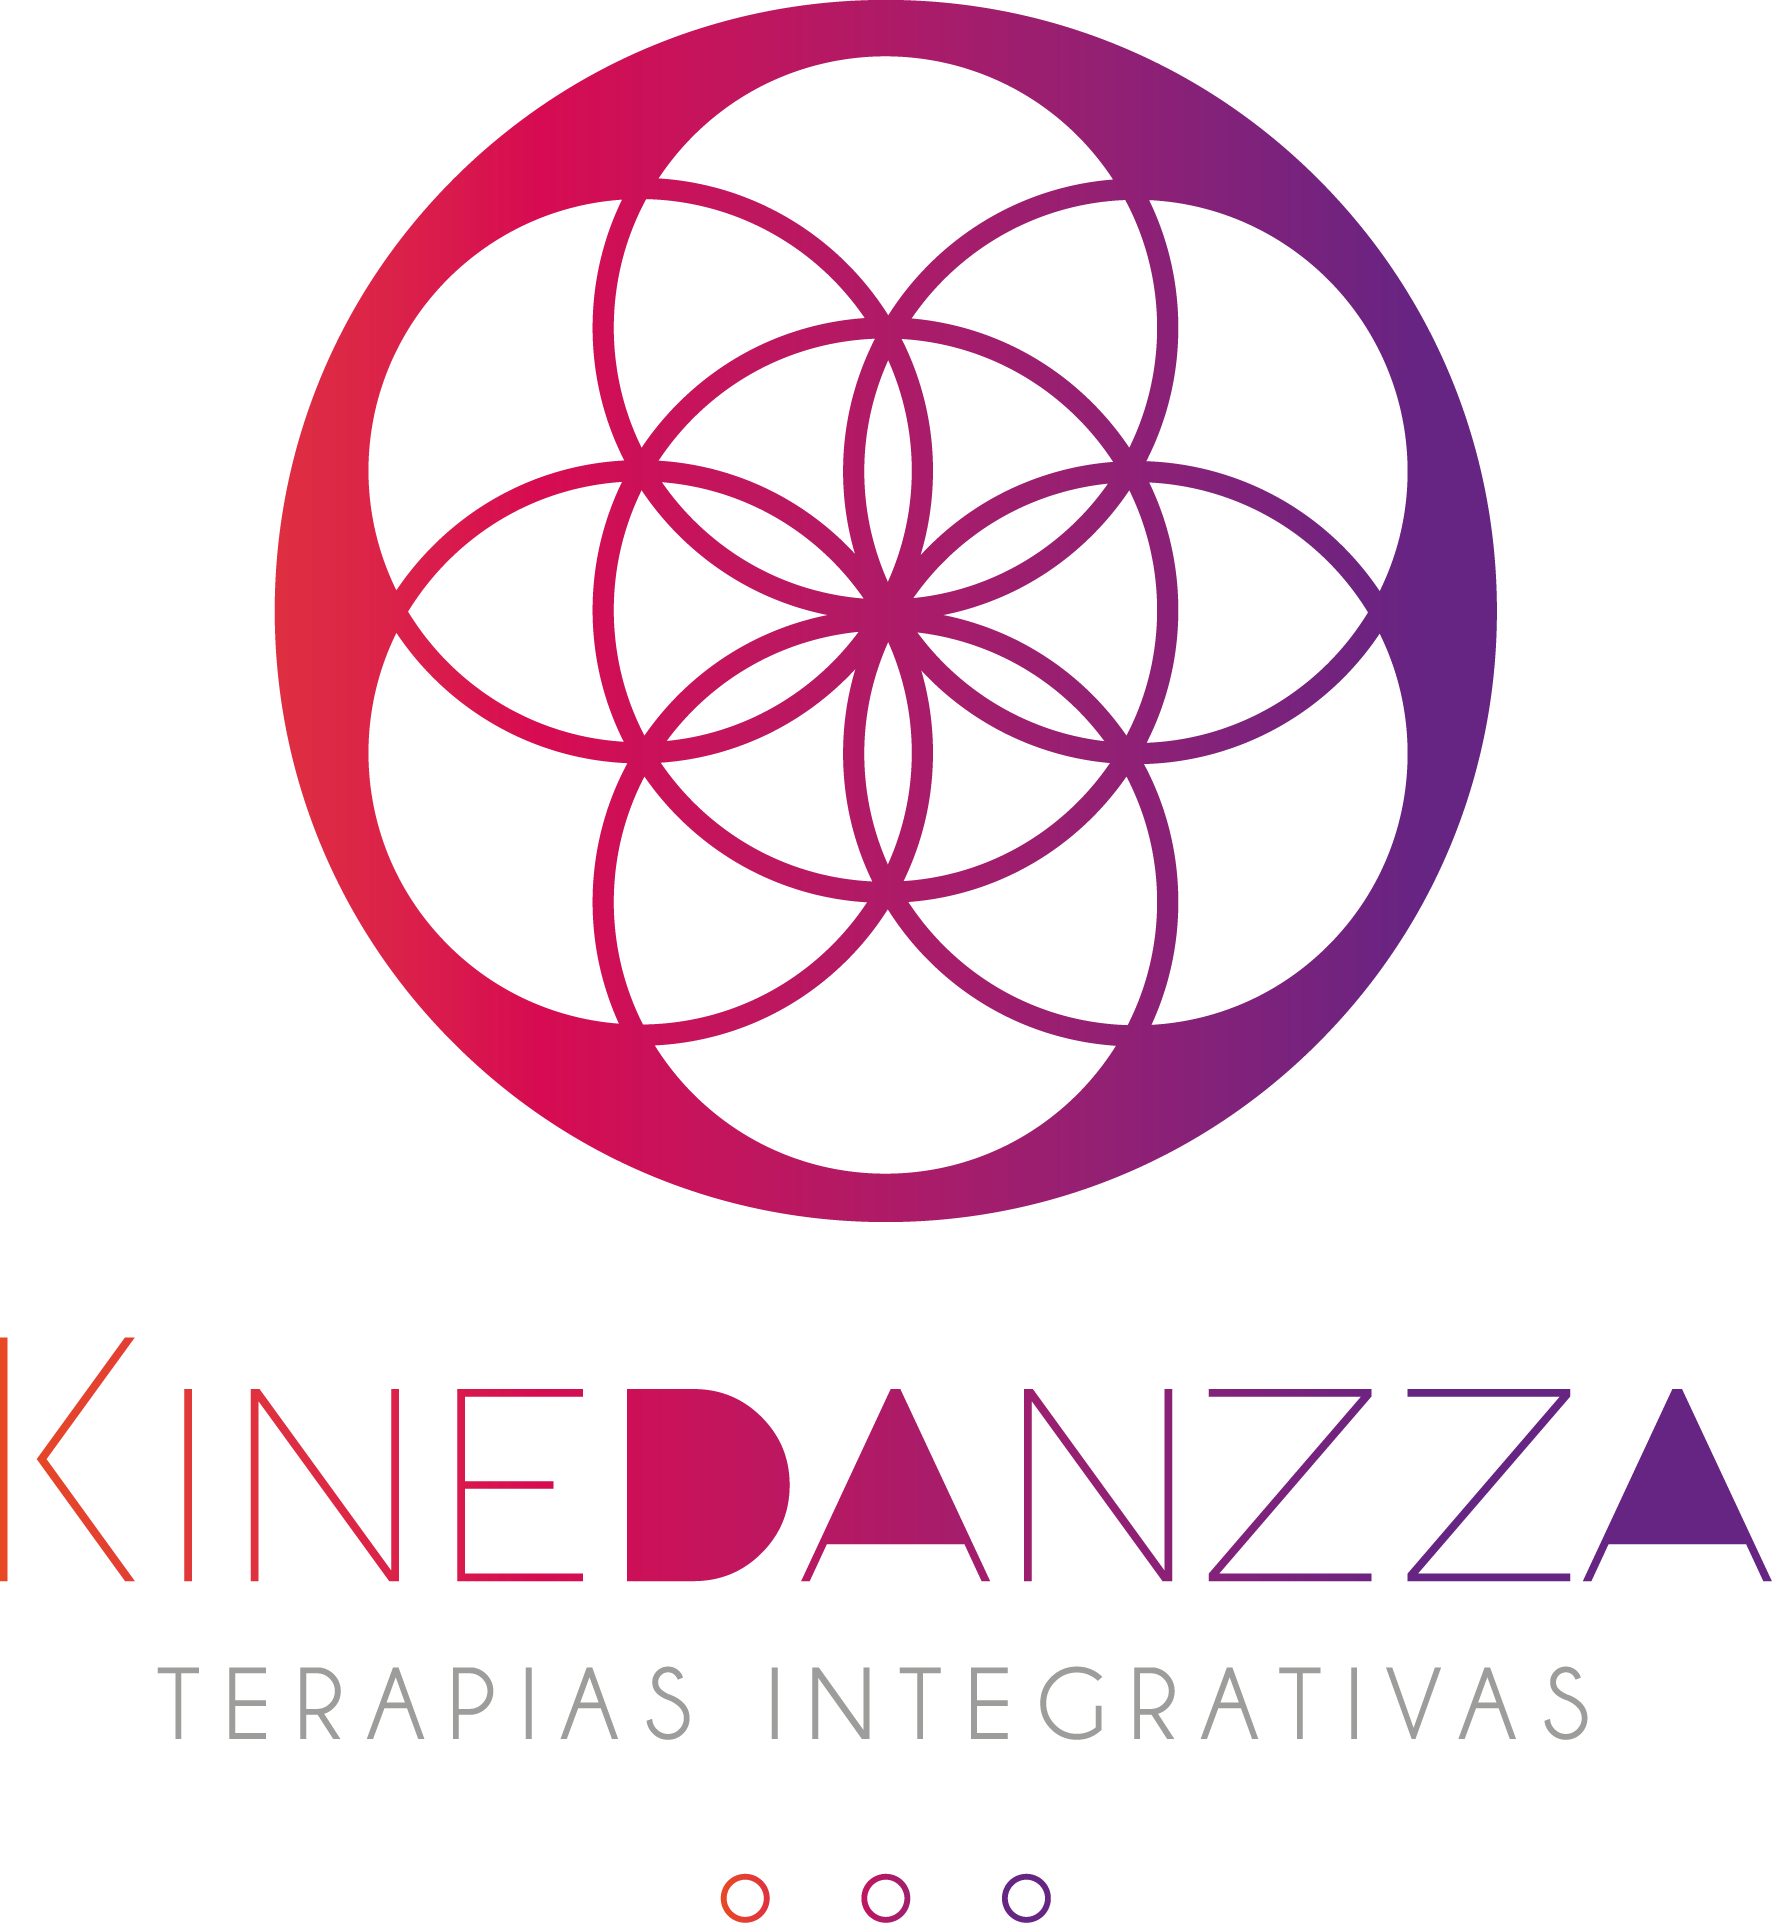 Kinedanzza